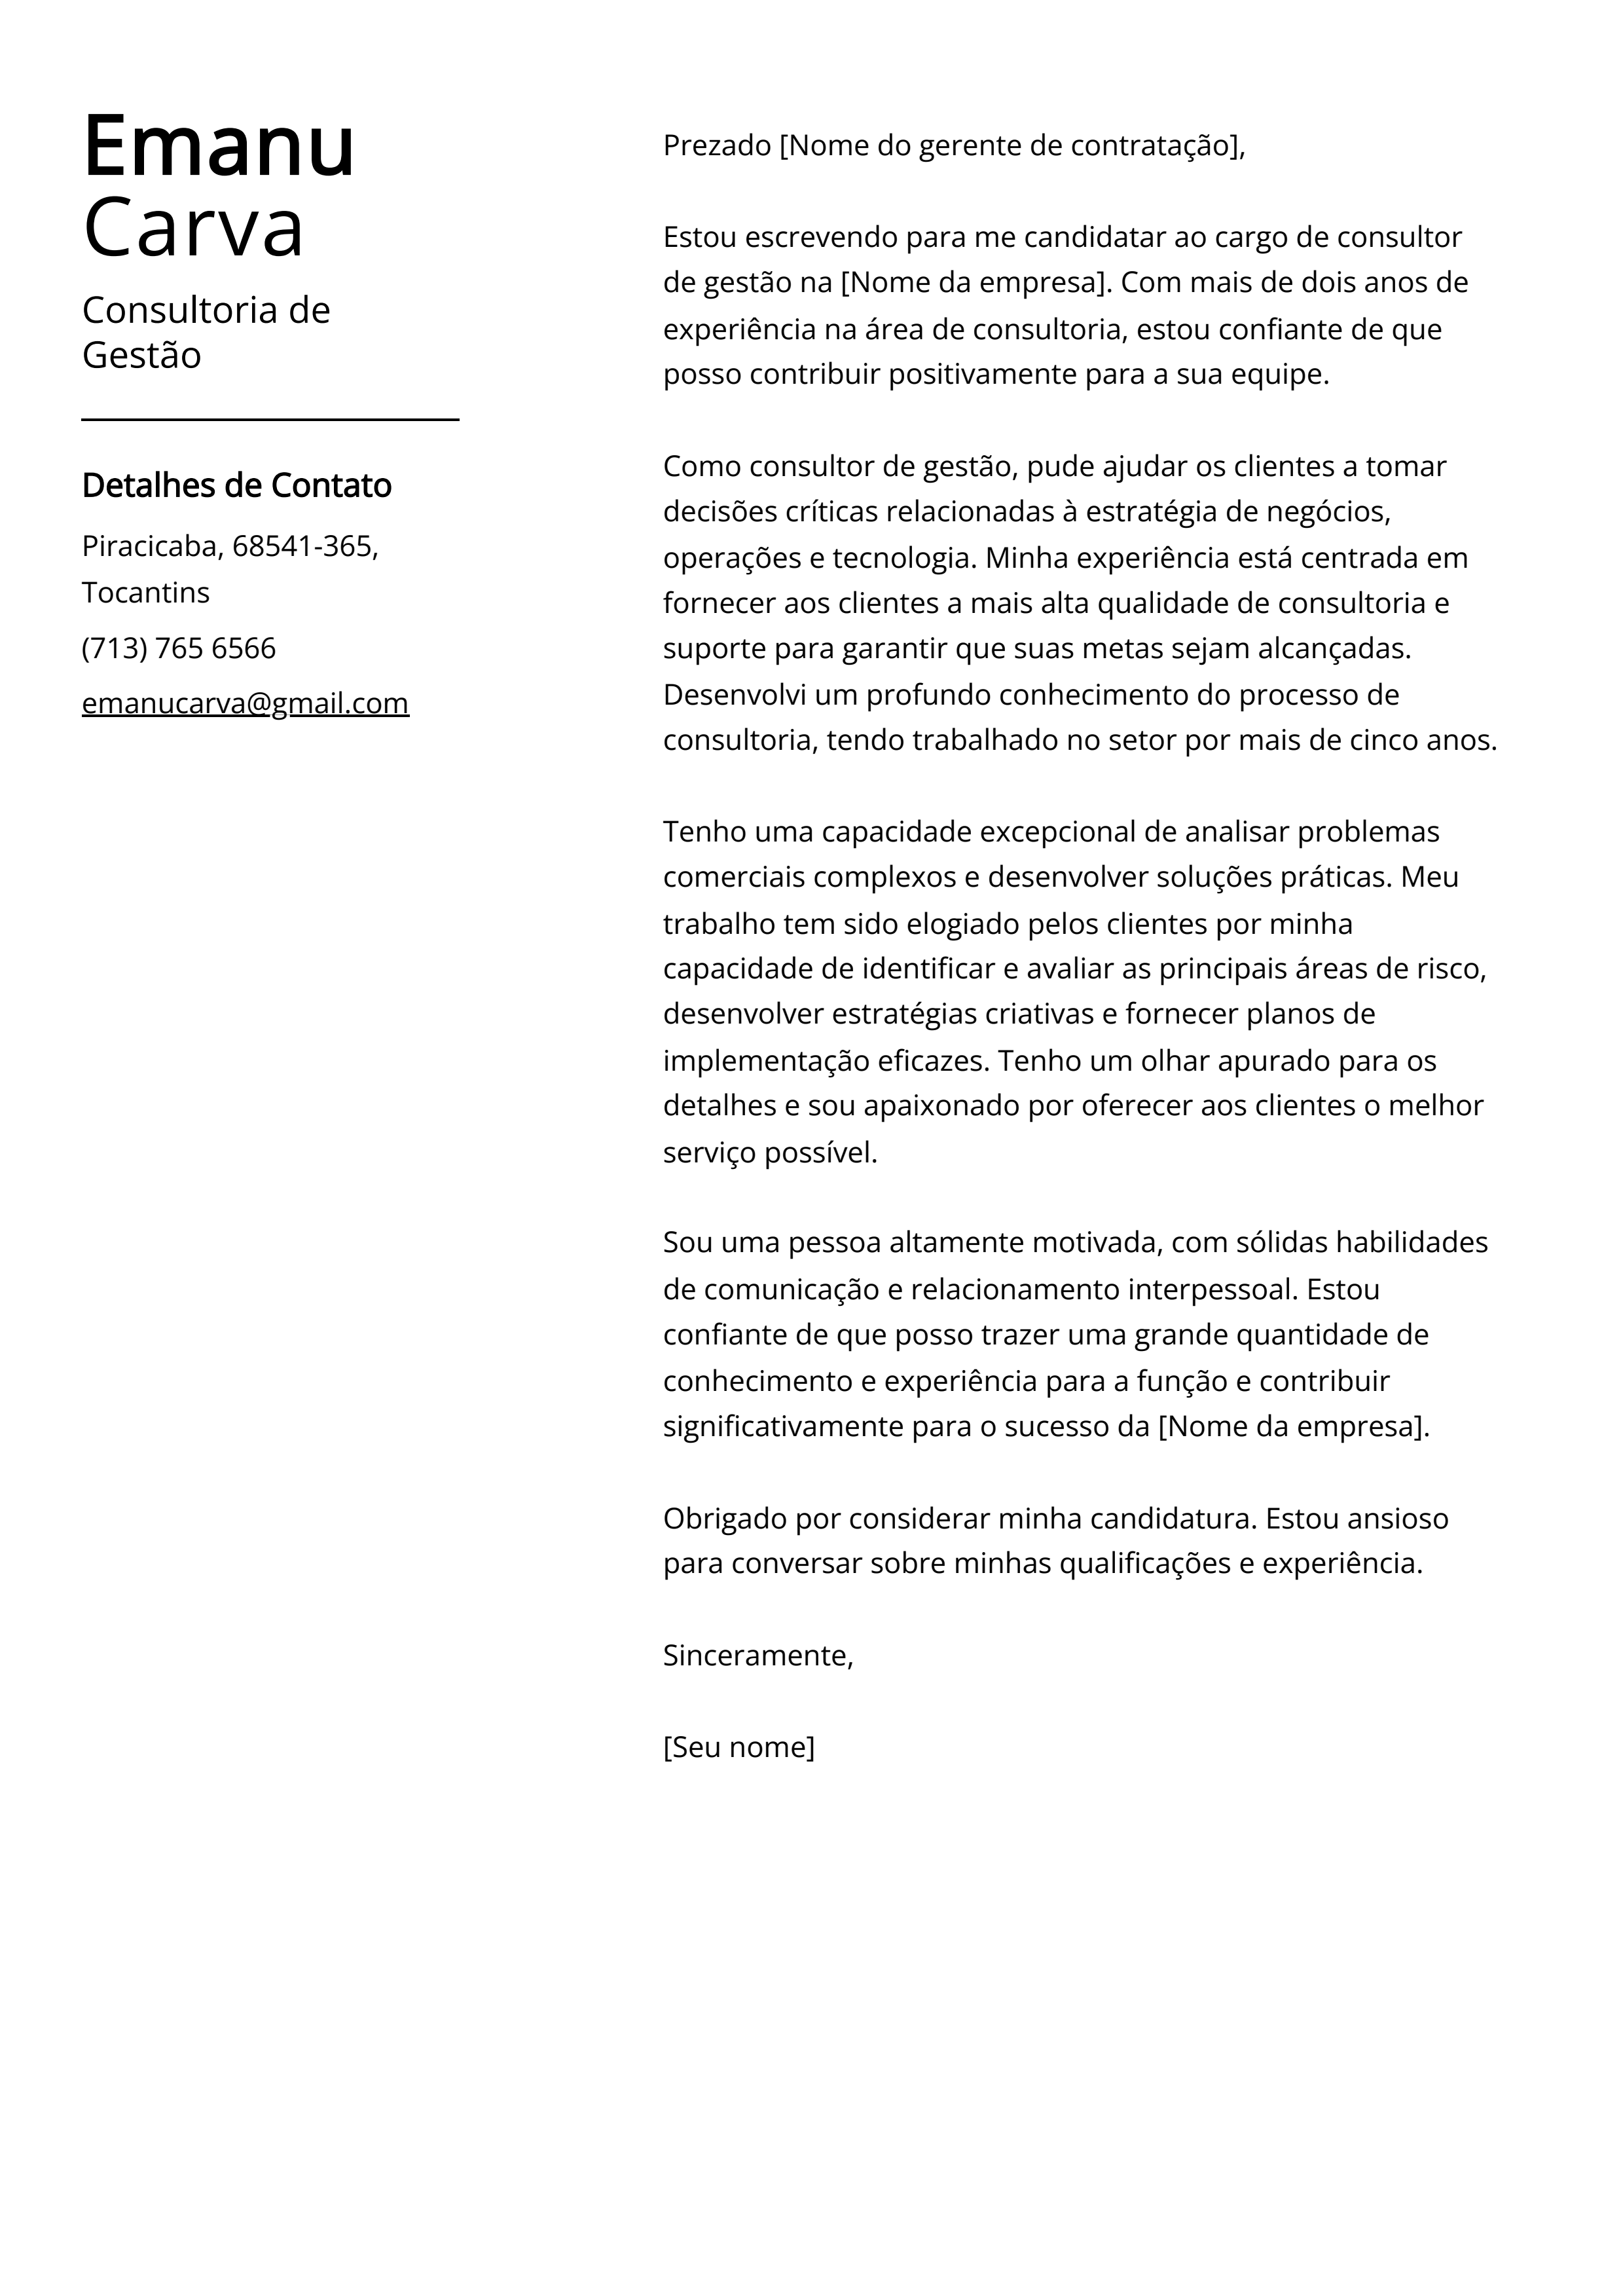 Exemplo de carta de apresentação da Consultoria de Gestão